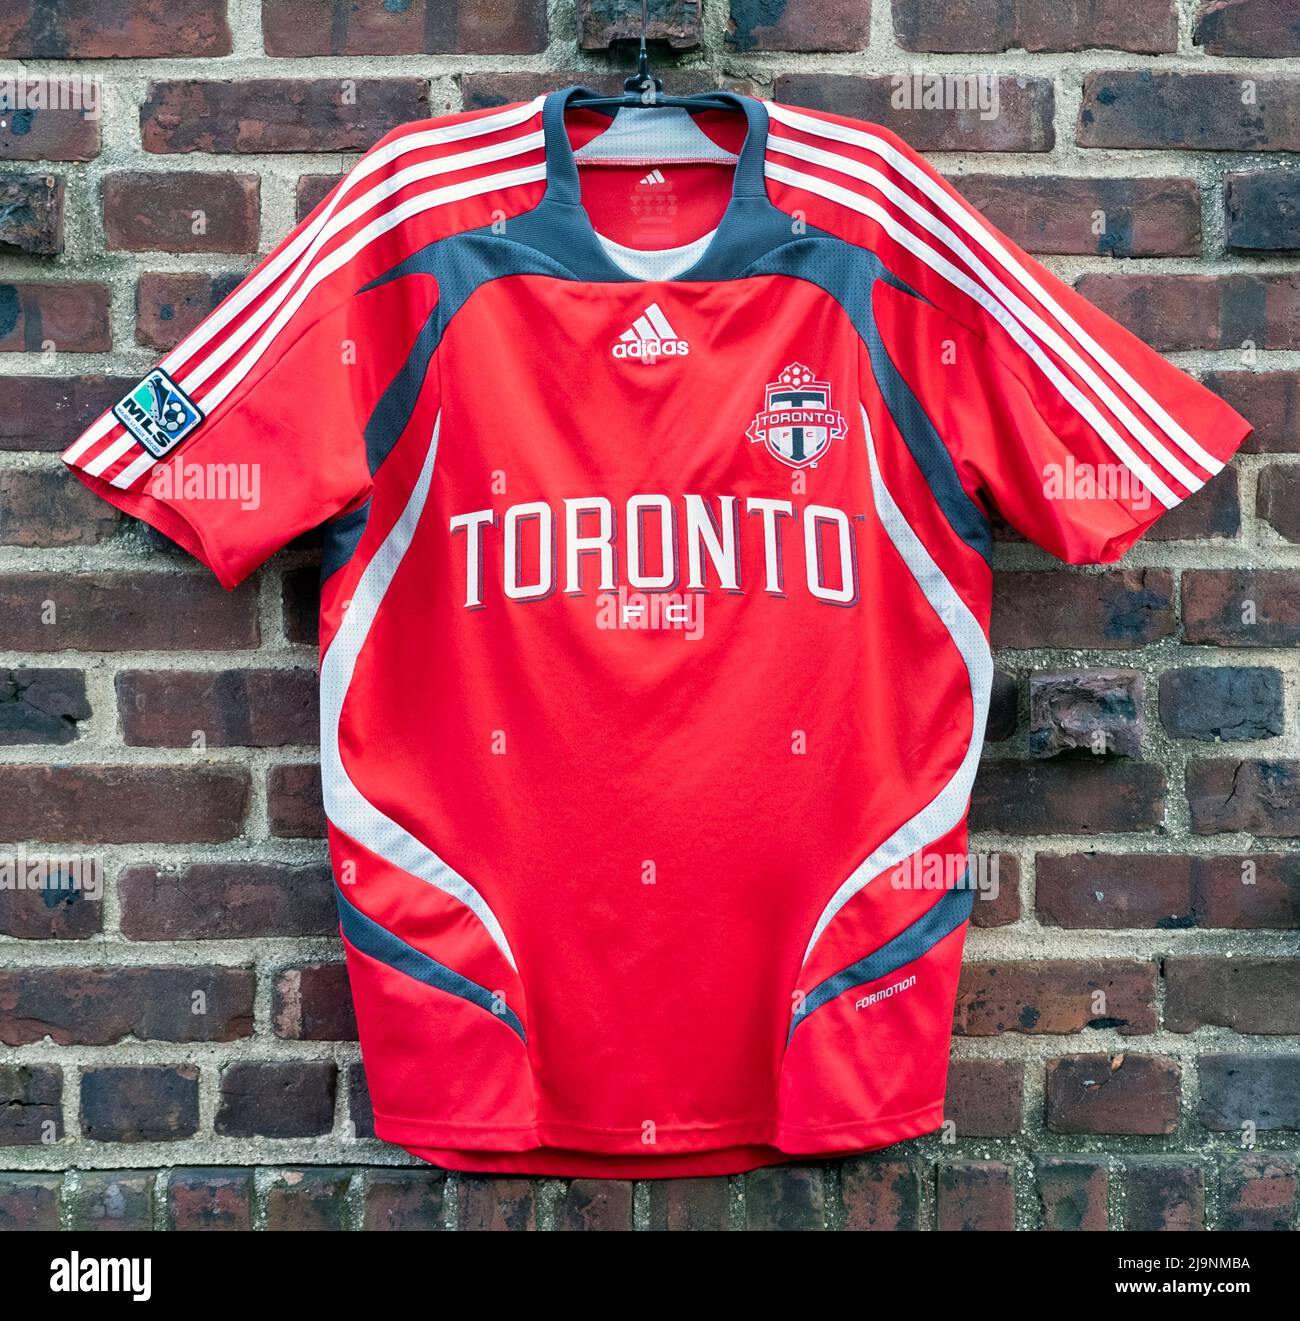 Ein authentisches Adidas 2008 Fußballtrikot für den FC Toronto, den Toronto Football Club der MLS, Major League Soccer. Stockfoto